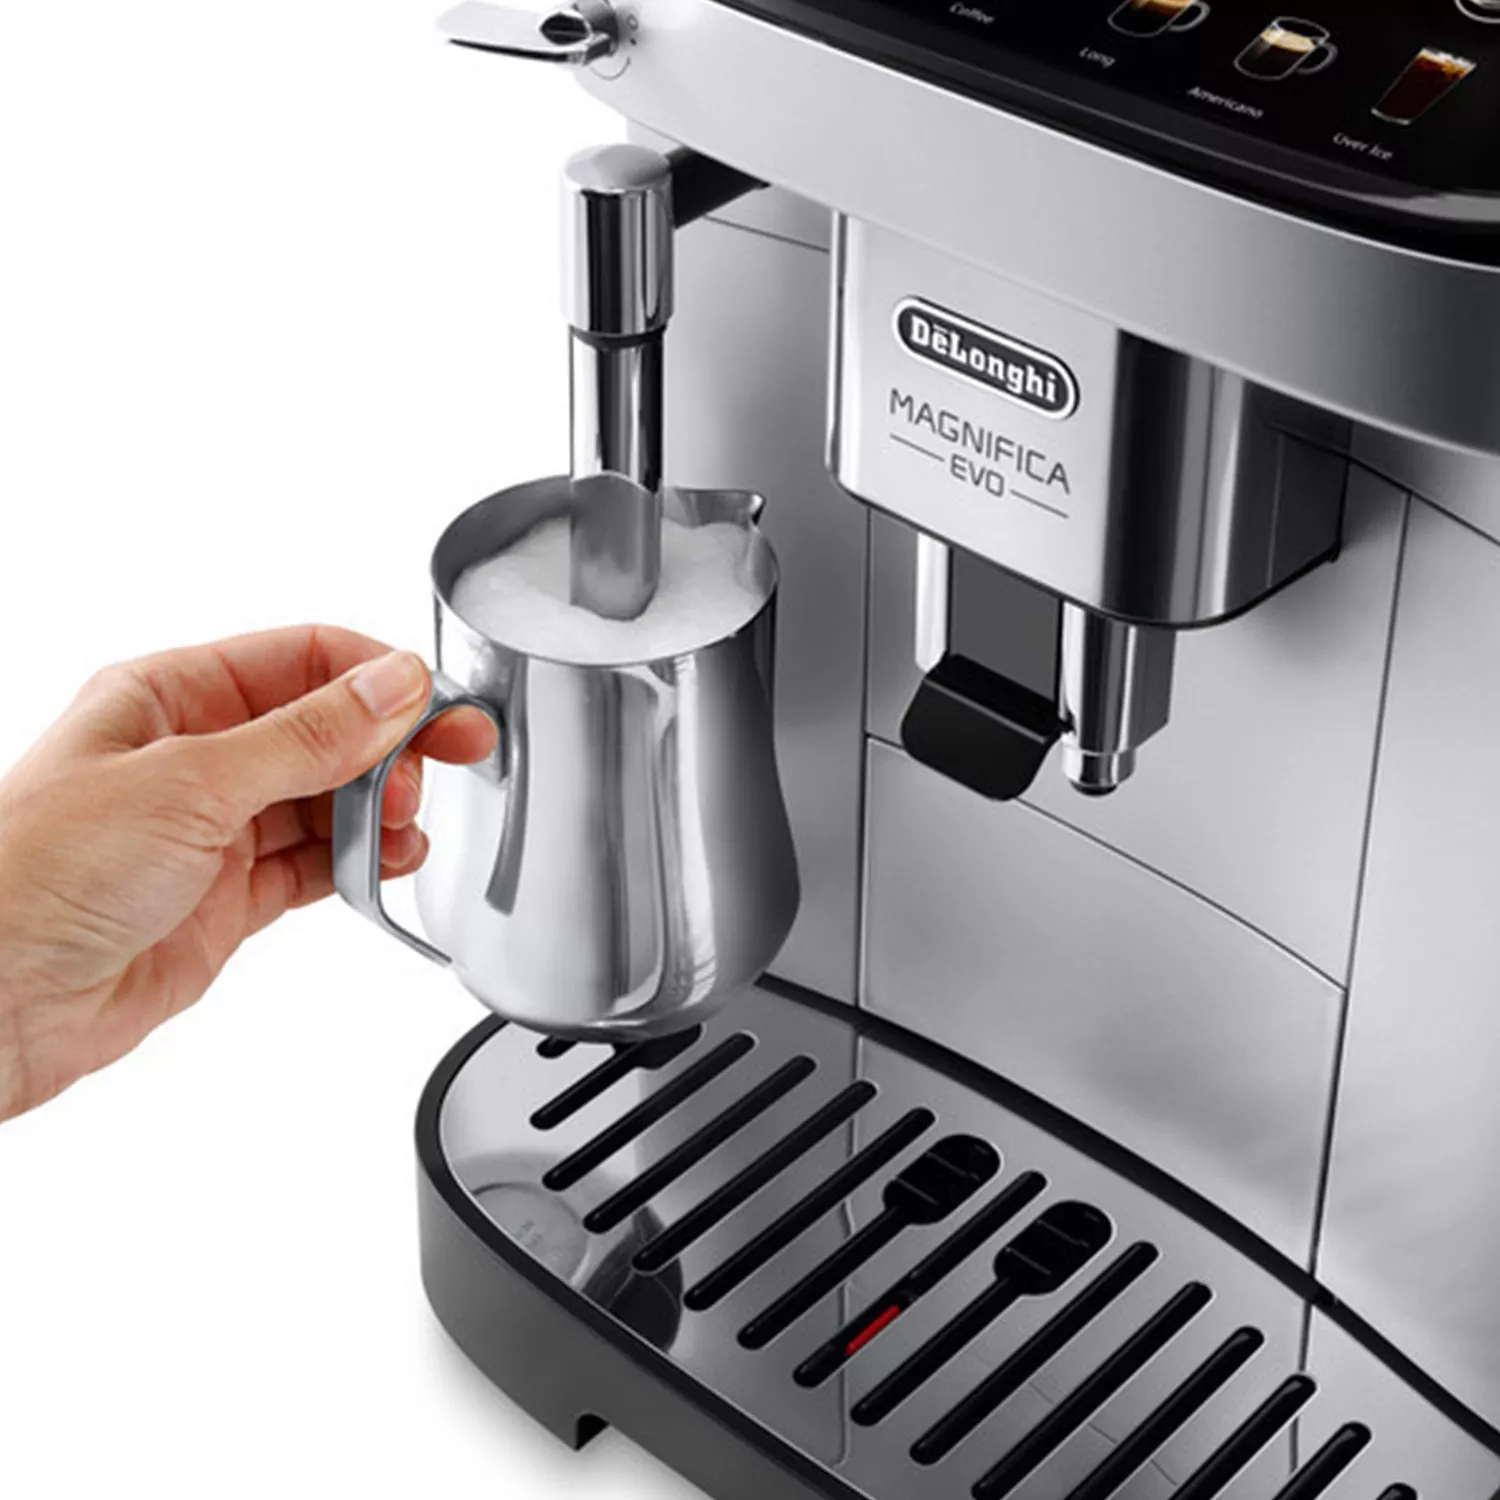 De'Longhi Magnifica Evo Fully Automatic Espresso Machine with Latte Crema System